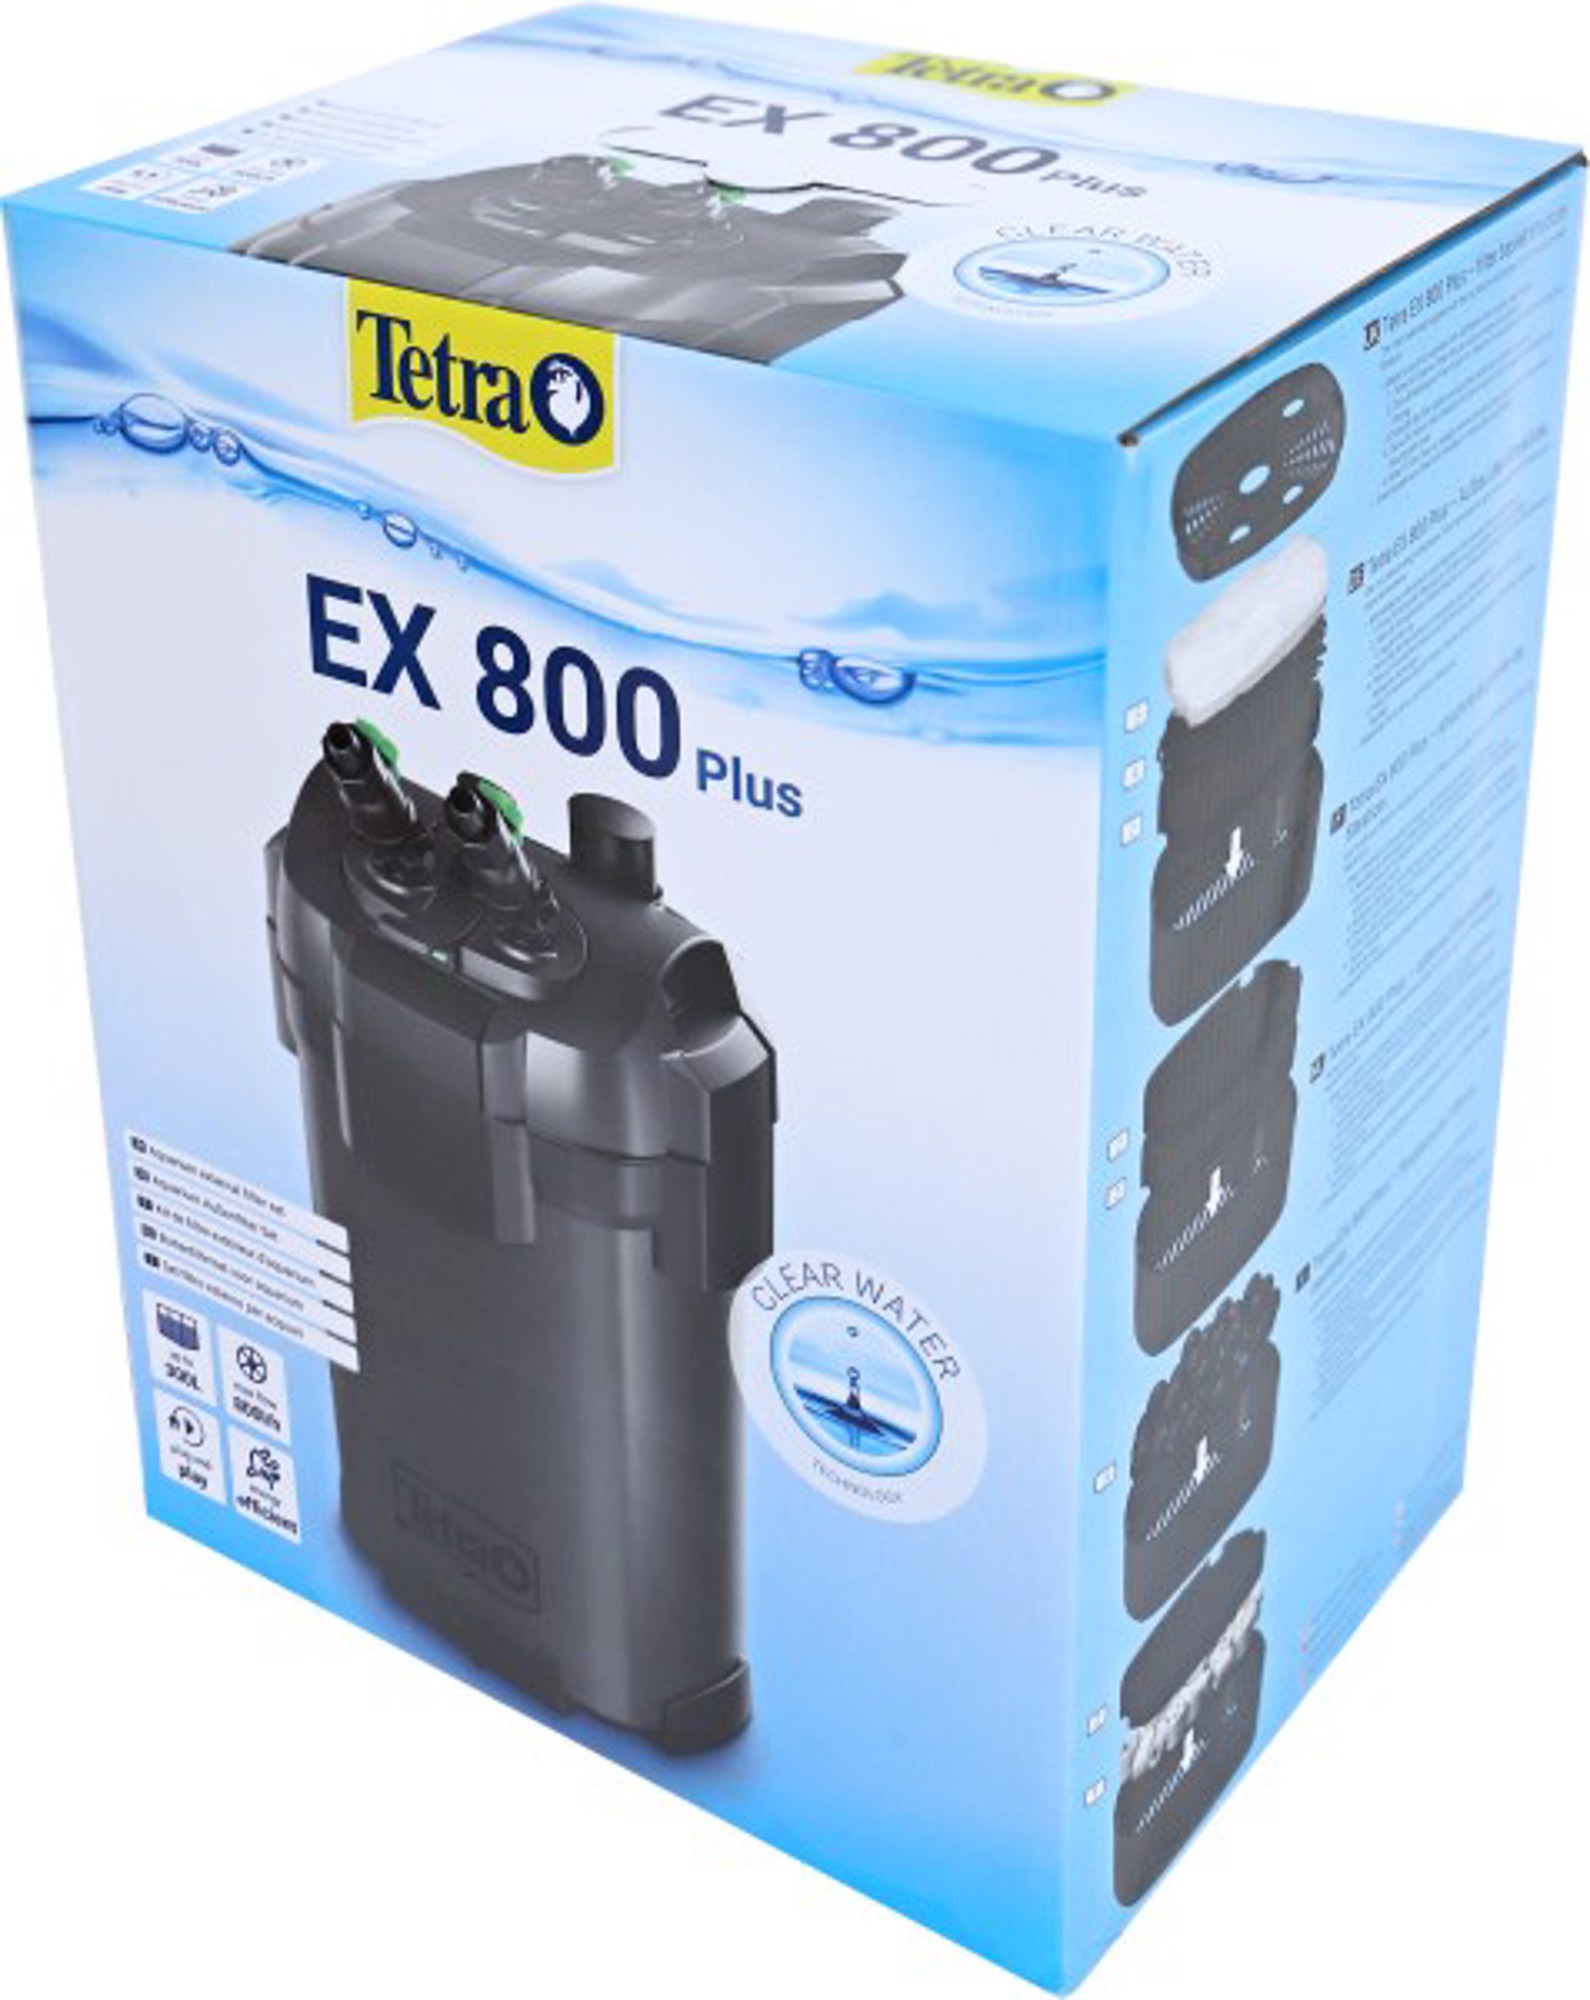 TETRATEC EX 800 PLUS TETRA - Dier in